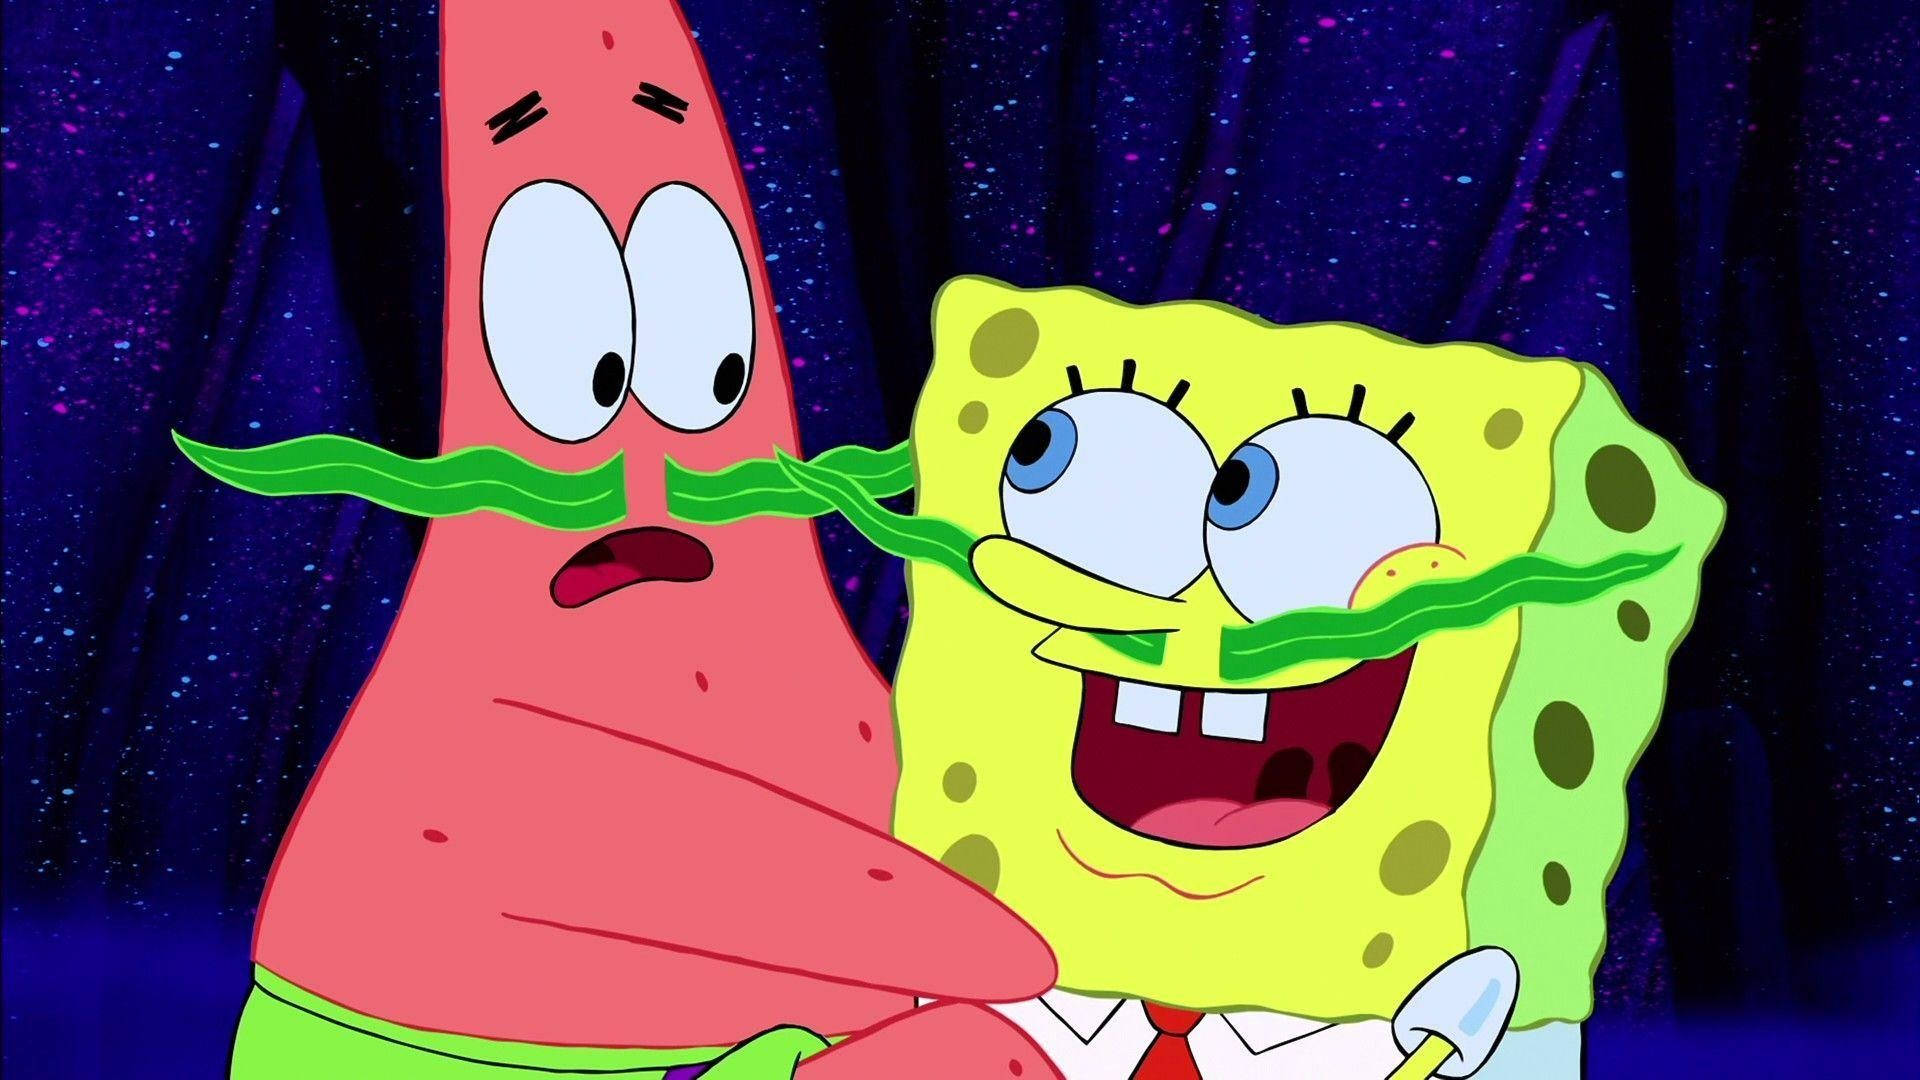 Hài hước, nghịch ngợm và đáng yêu - tất cả đều có trong bức ảnh nền SpongeBob vui nhộn với Patrick. Hãy thưởng thức những khoảnh khắc tuyệt vời với nhân vật yêu thích của bạn.